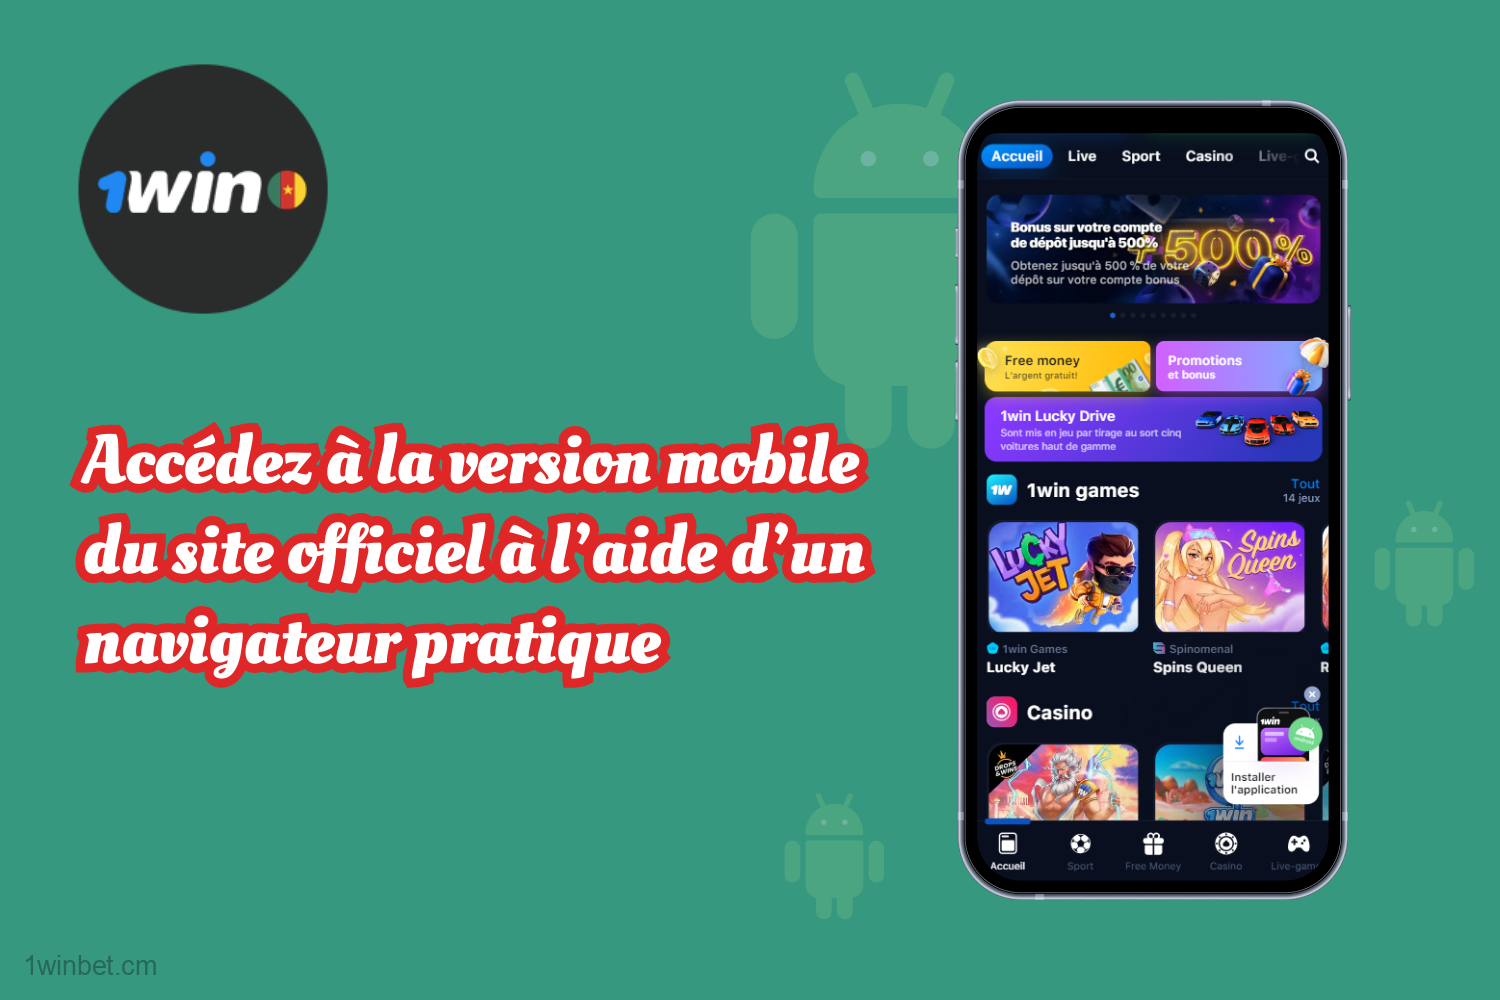 Les utilisateurs camerounais doivent accéder à la version mobile du site web 1win à l'aide d'un navigateur pratique